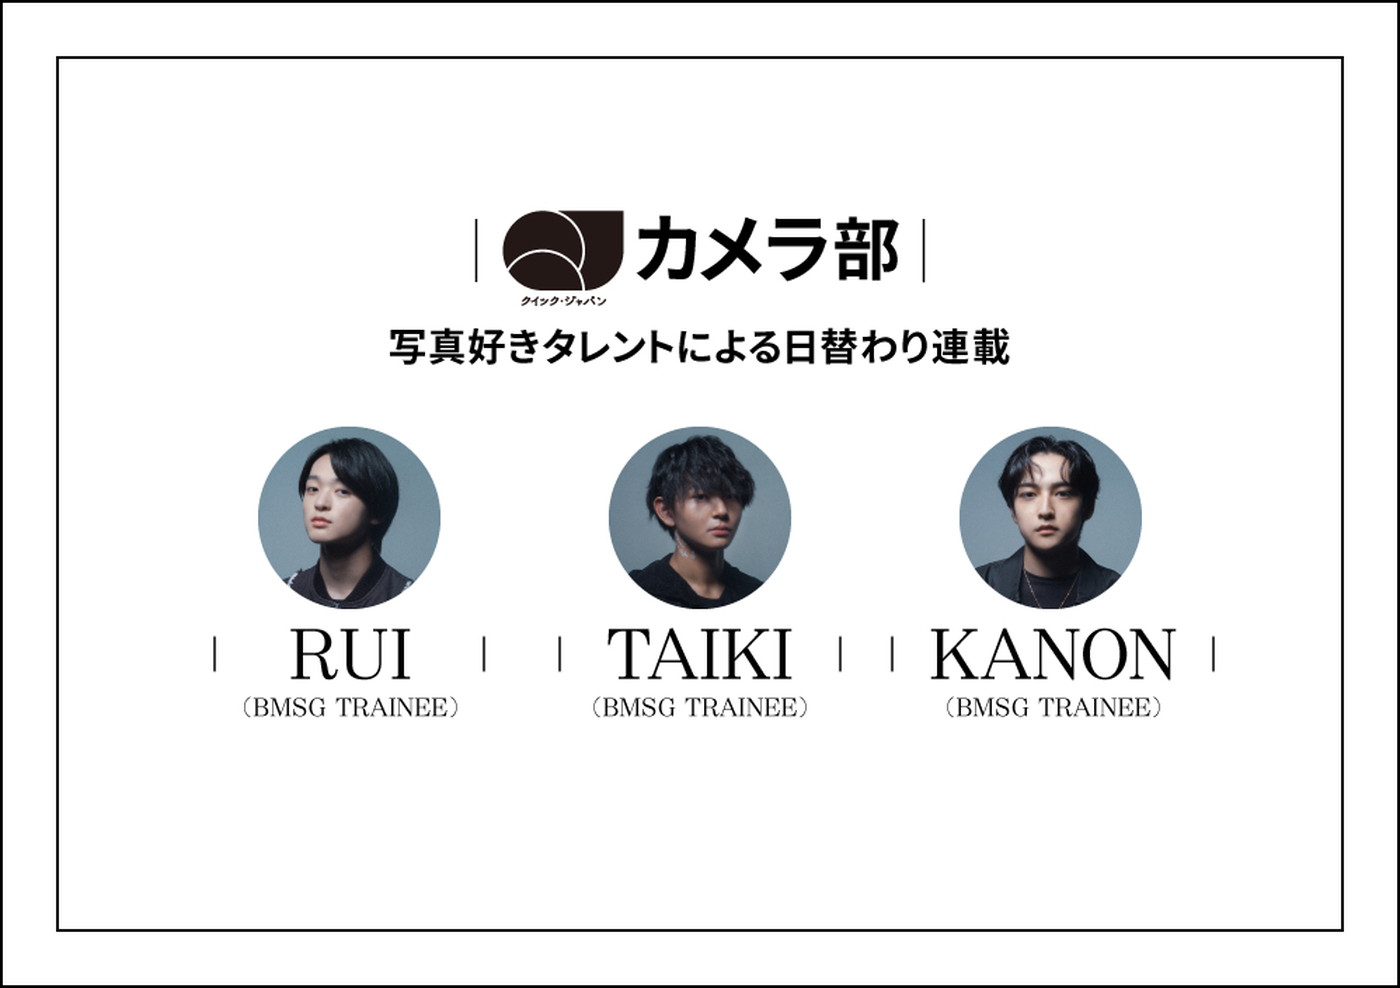 SKY-HI主宰BMSGのトレーニーであるRUI、TAIKI、KANONが「QJカメラ部」新メンバーに決定